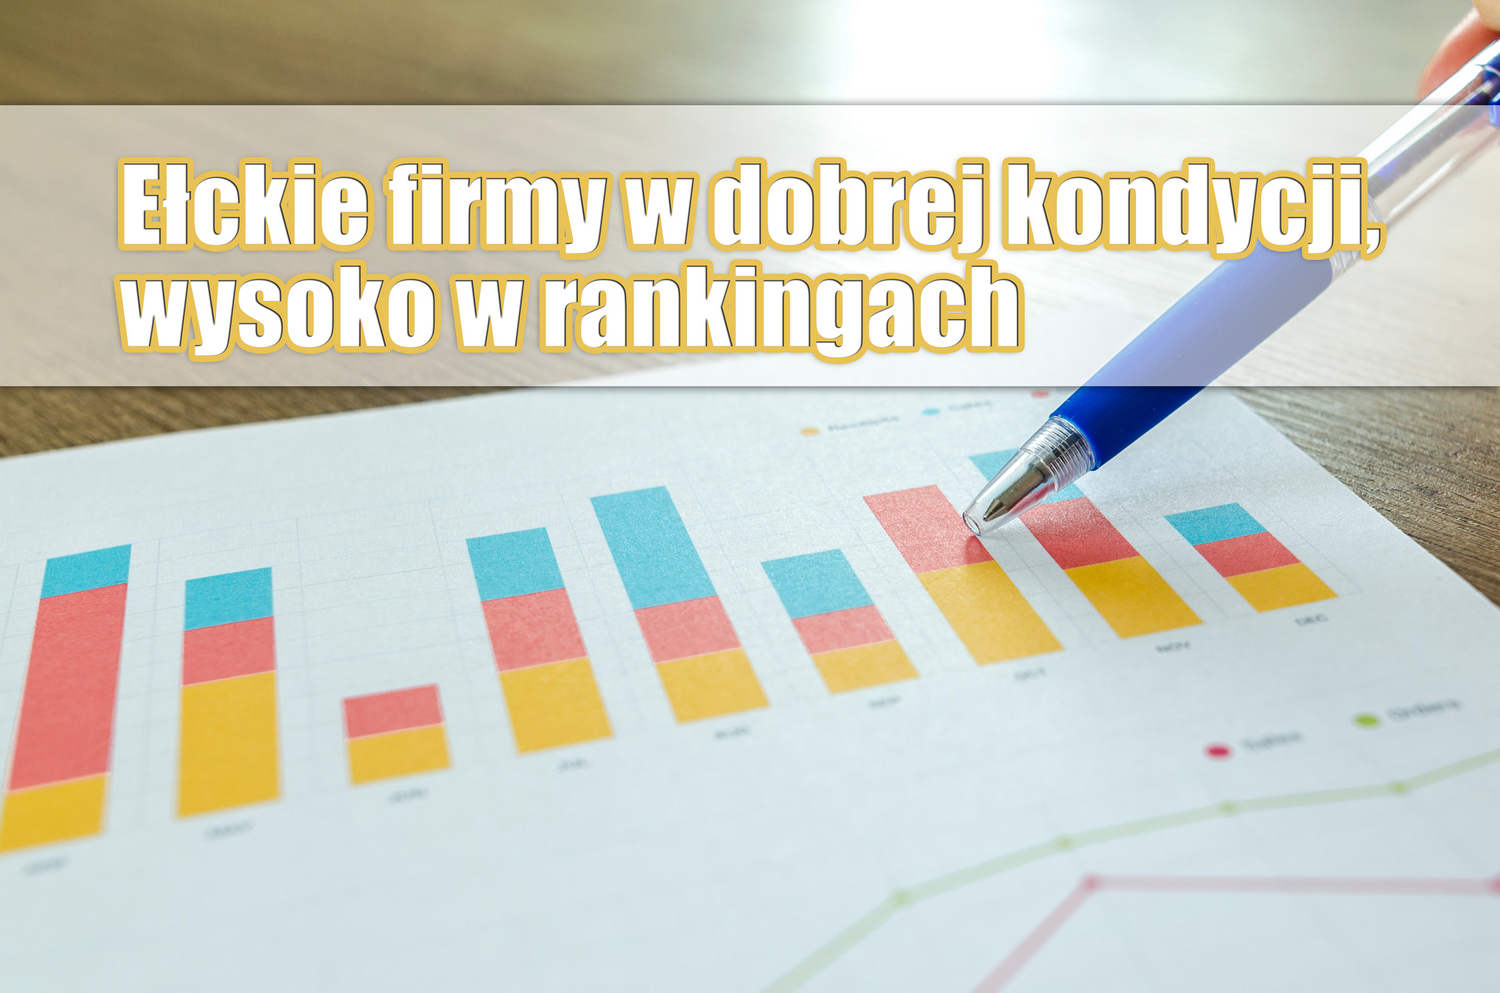 Ełk-Unternehmen in gutem Zustand, hoch in den Rankings